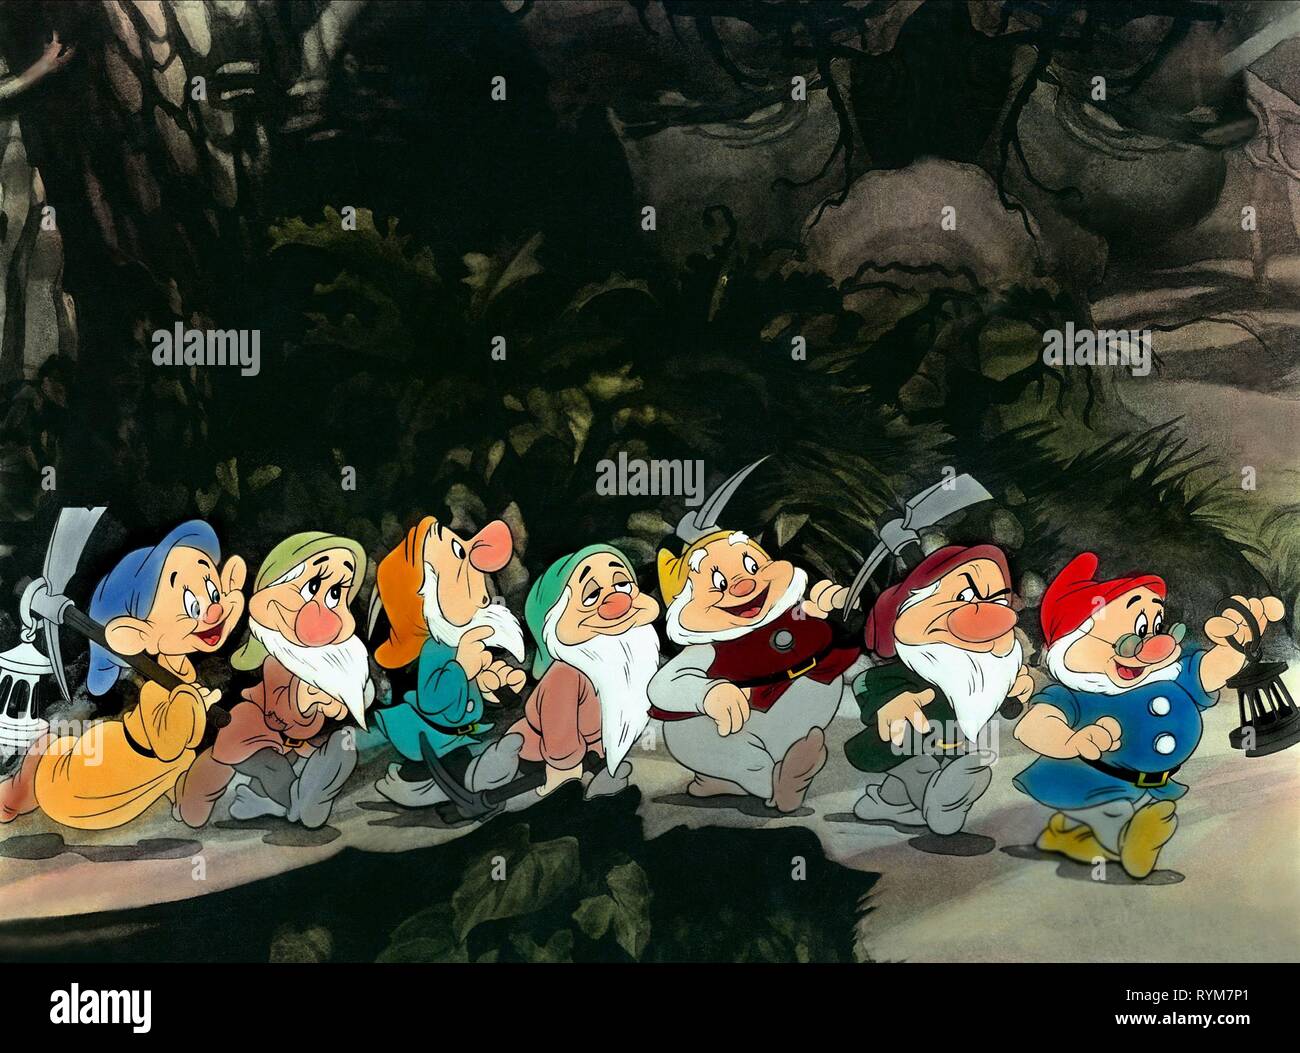 Tonies Disney - Blanche-Neige et les Sept Nains (Allemand) - digitec